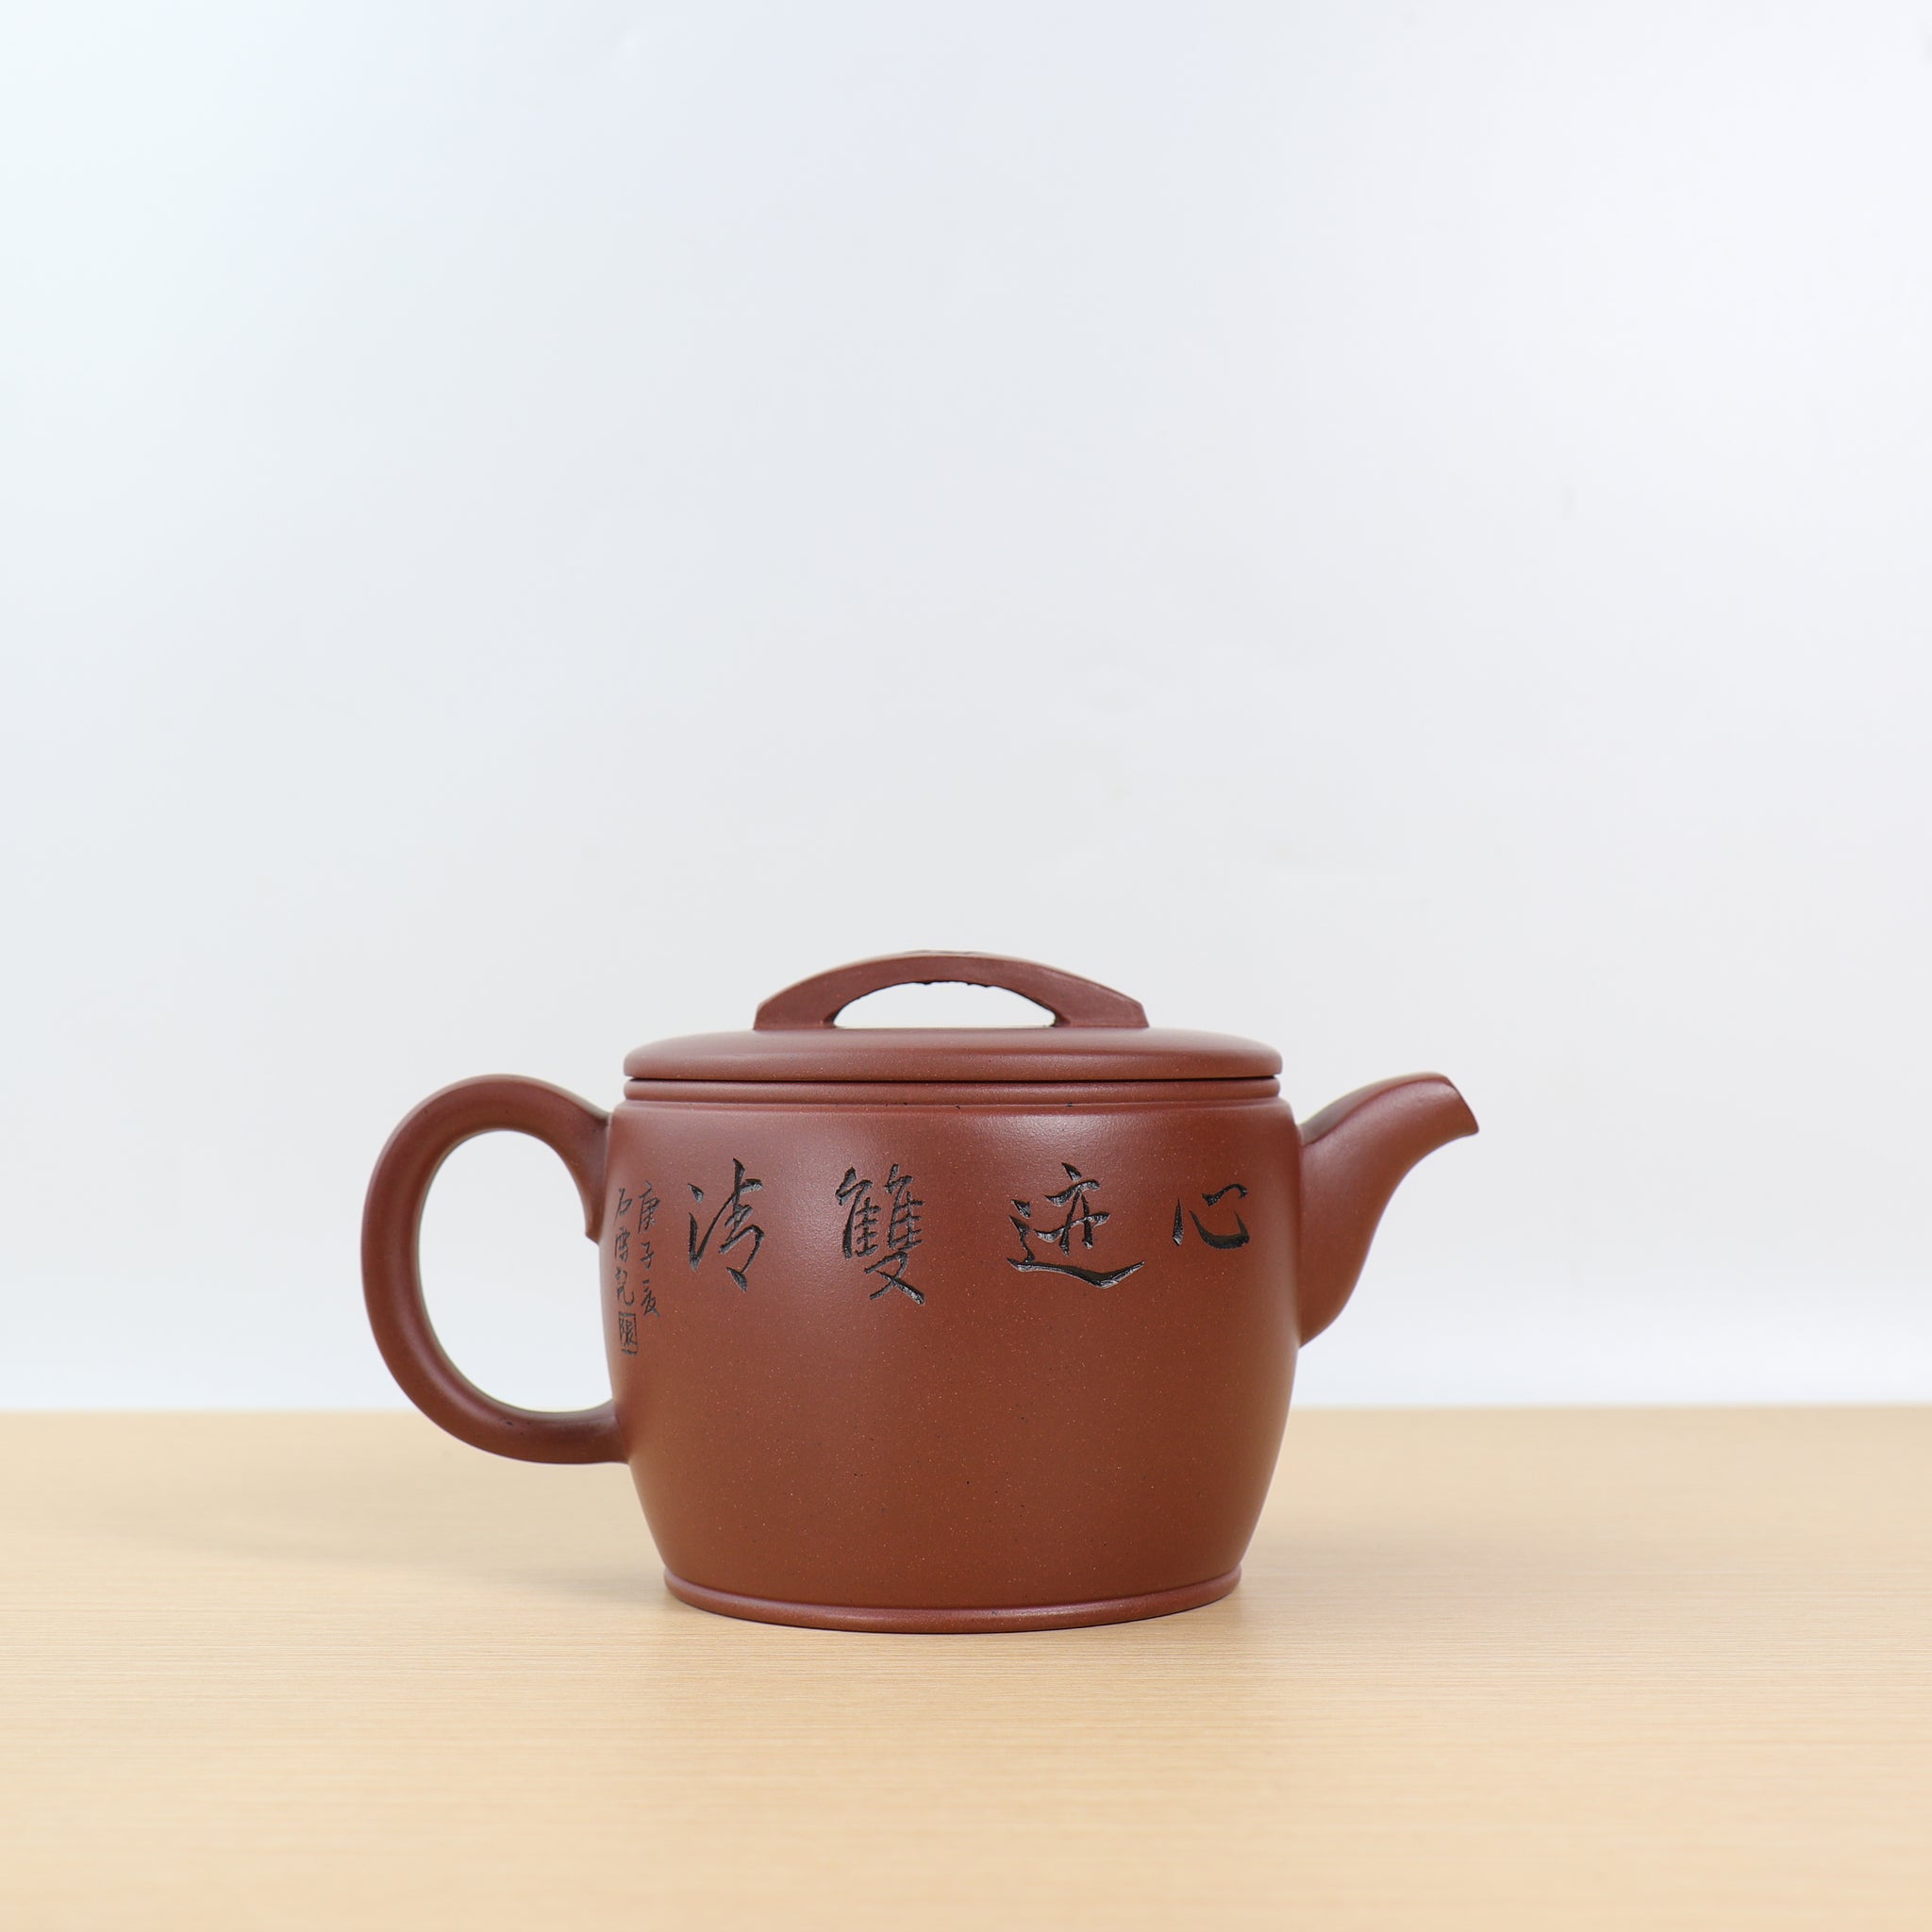 【漢瓦】原礦底槽青雕刻紫砂茶壺